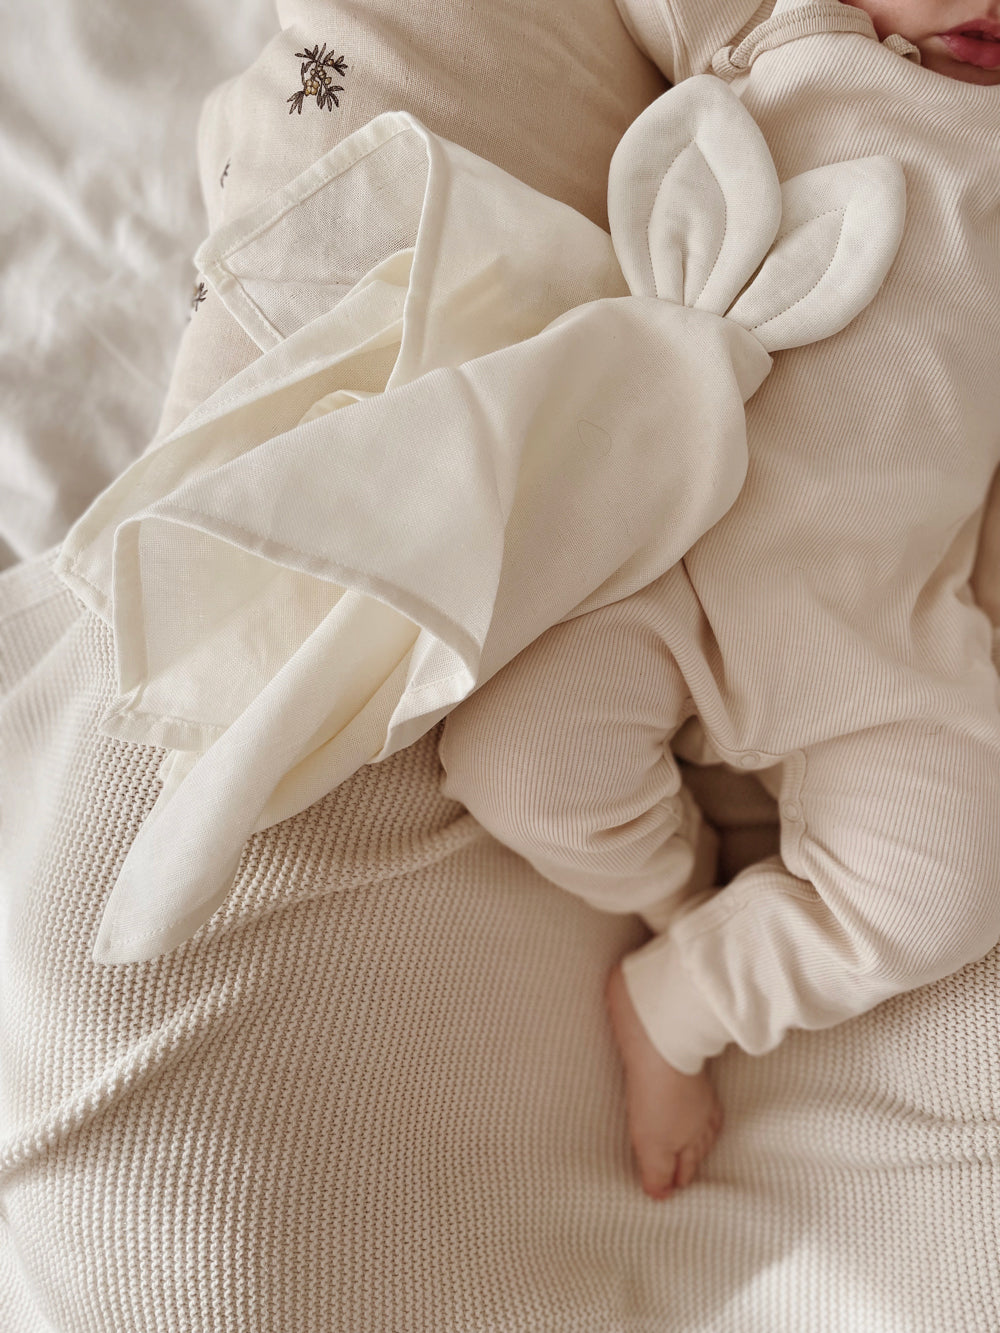 Doudou lange Saga Copenhague délicatement posé à côté d'un bébé faisant la sieste sur une couverture.